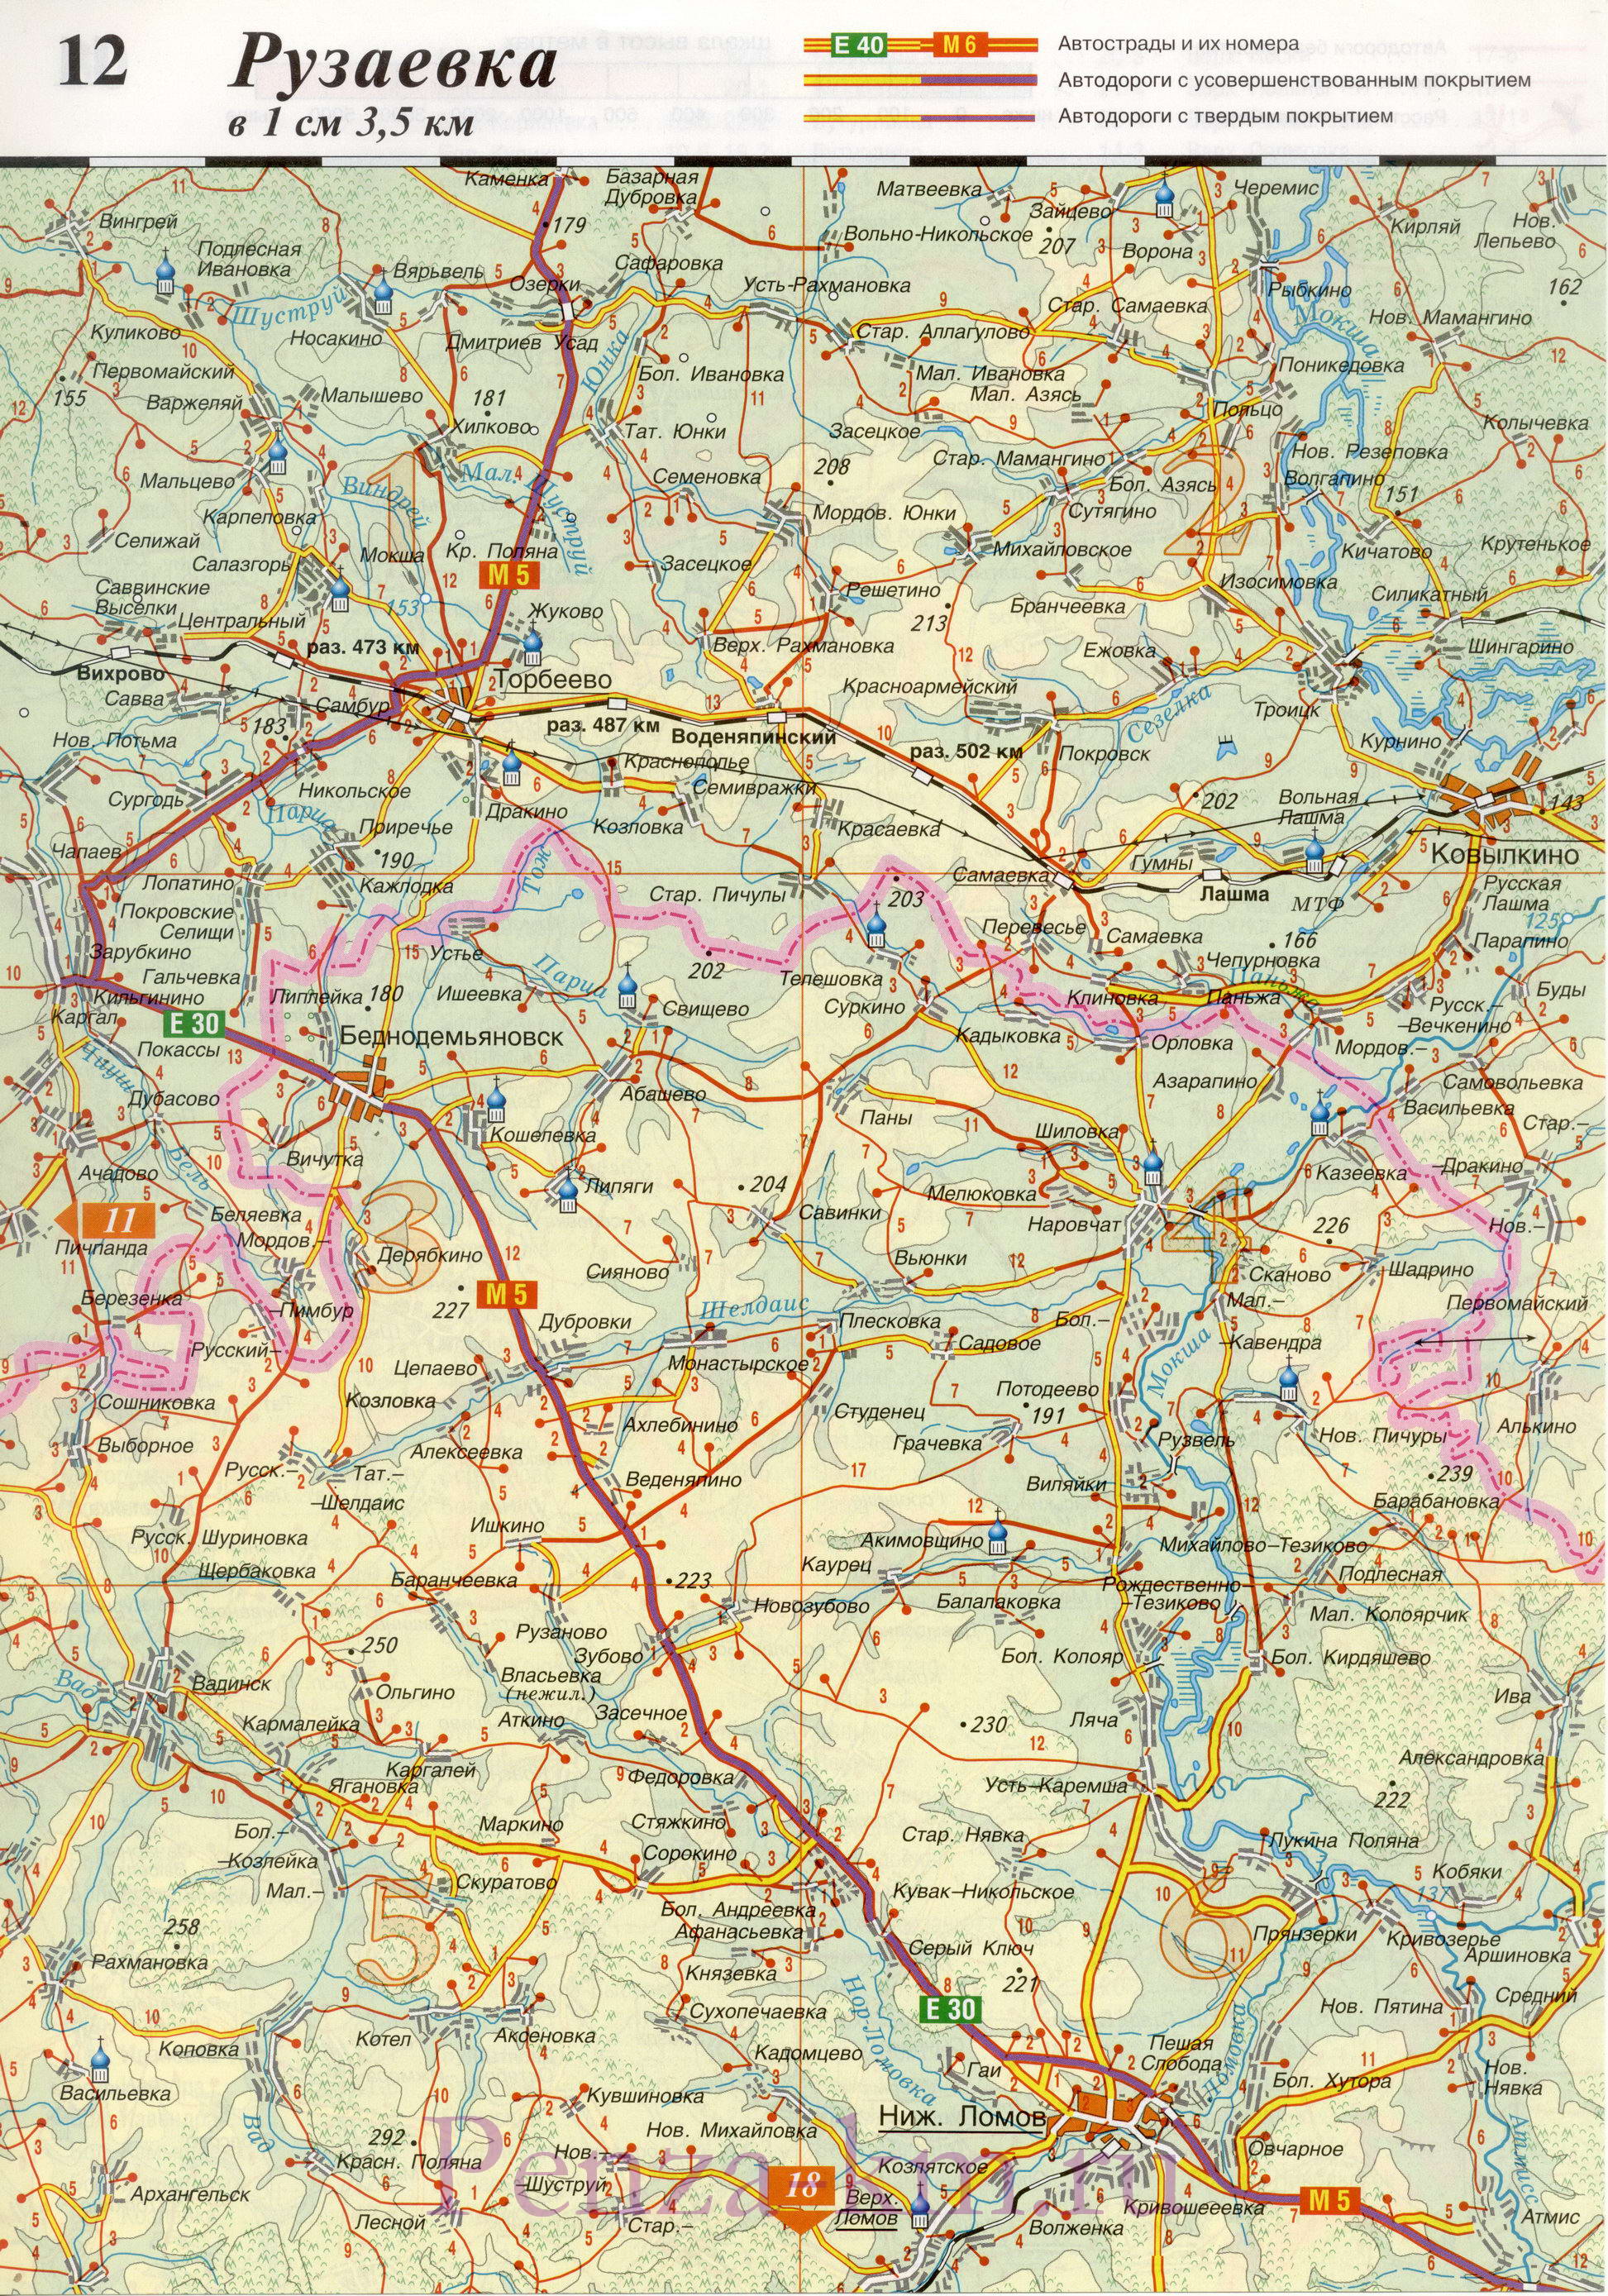  Пензенская область карта дорог. Подробная карта автодорог Пензенской области масштаба 1см:3,5км, B0 - 